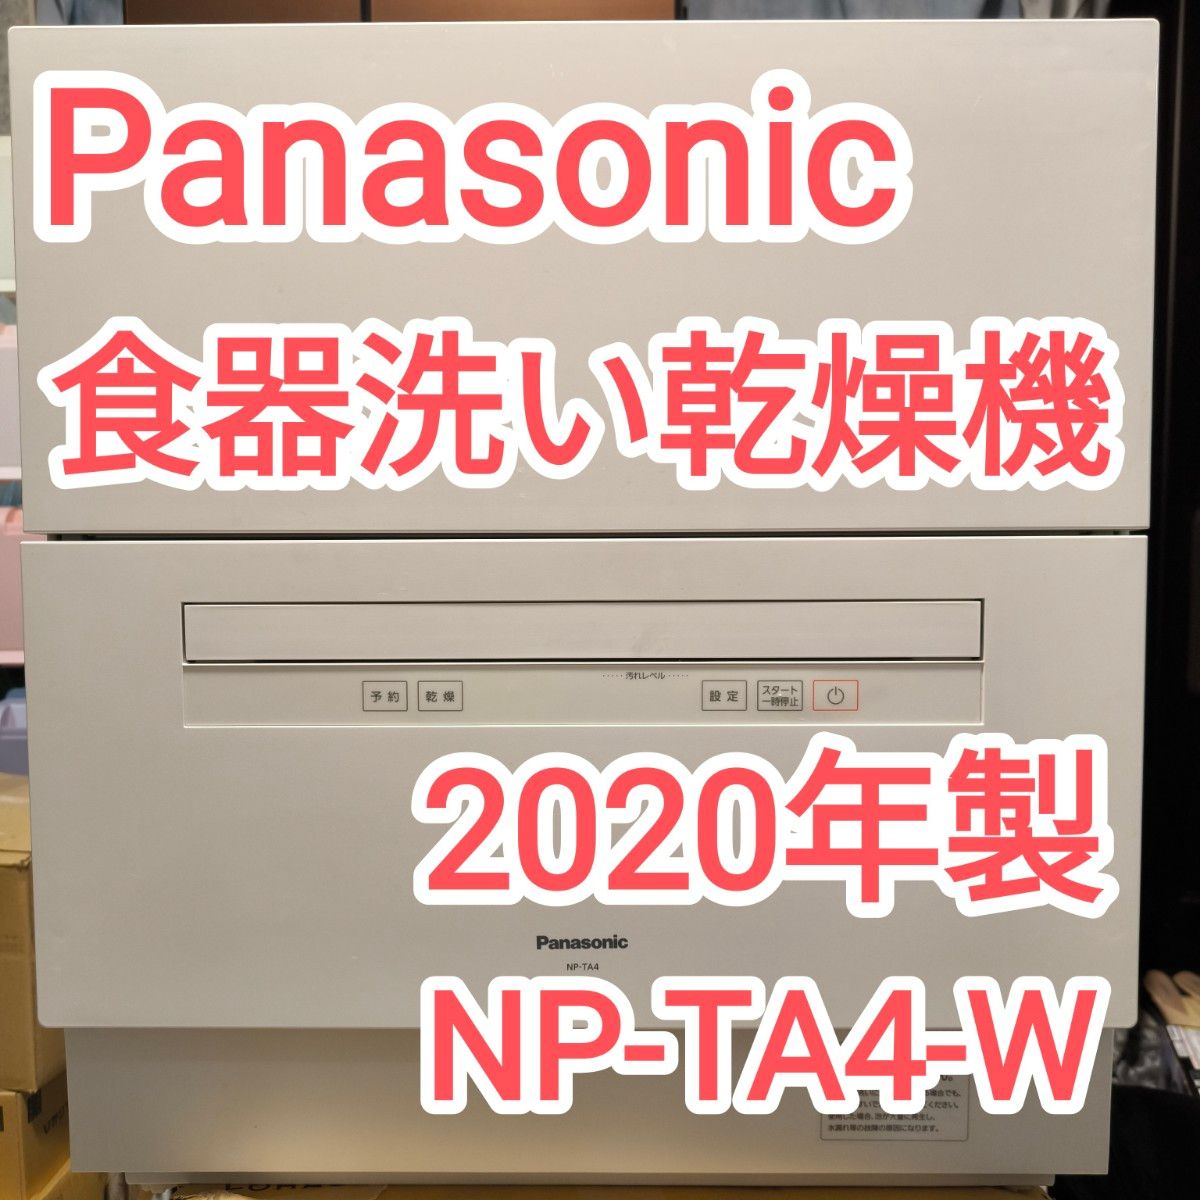 食器洗い乾燥機 NP-TA4-W パナソニック Panasonic ホワイト 食洗機 食洗器